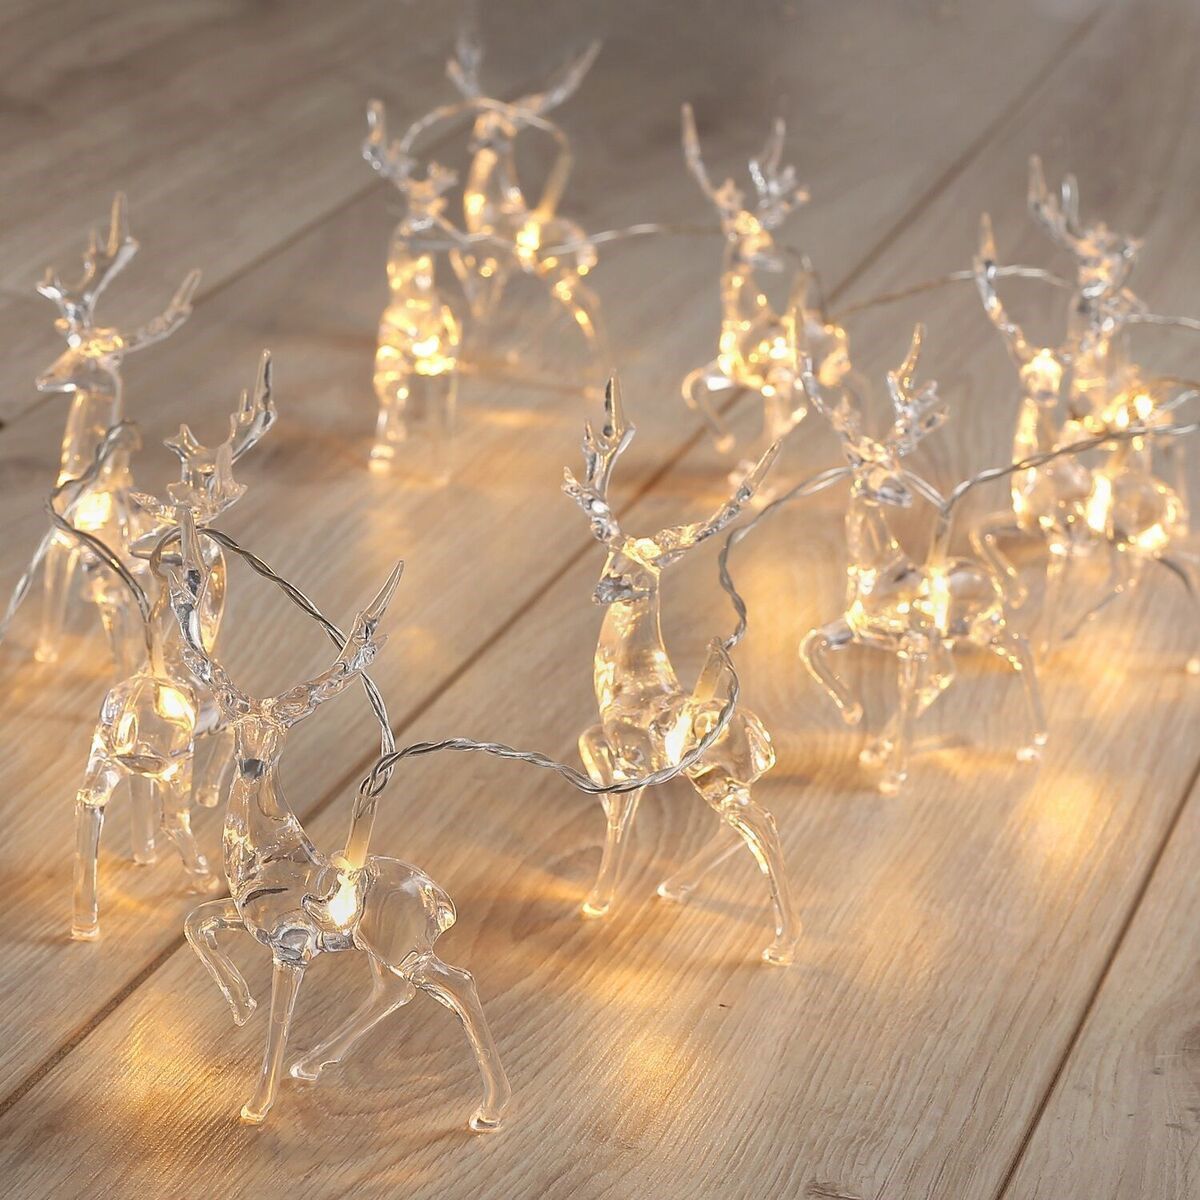 LED světelný řetěz ve tvaru sobů DecoKing Deer, 10 světýlek, délka 1,65 m - 4home.cz